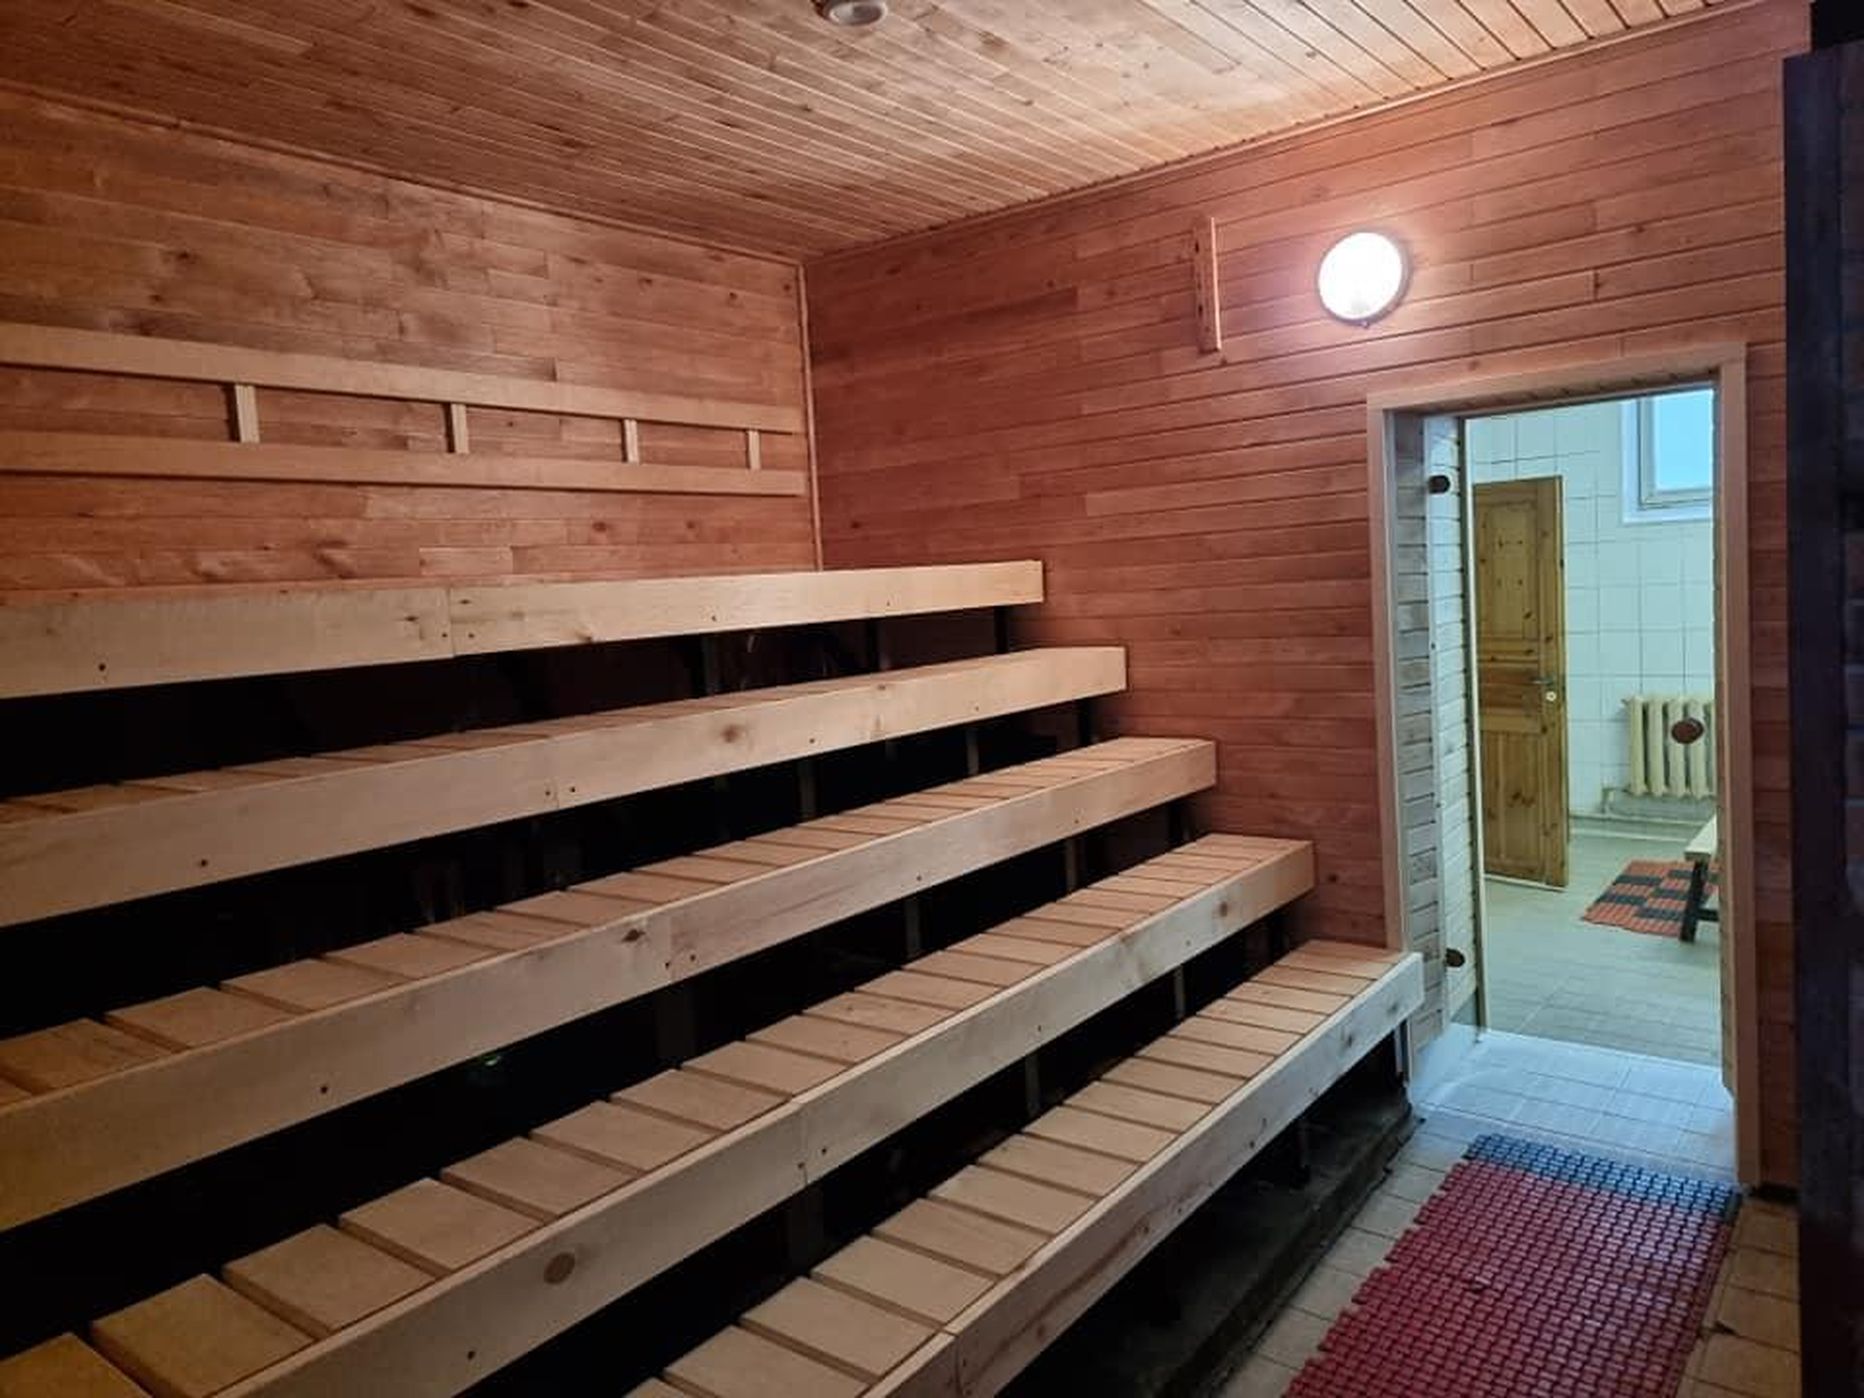 Tihemetsa sauna toetuseks korraldatakse laupäeva hommikupoolikul selle juures heategevuslik täiturg.